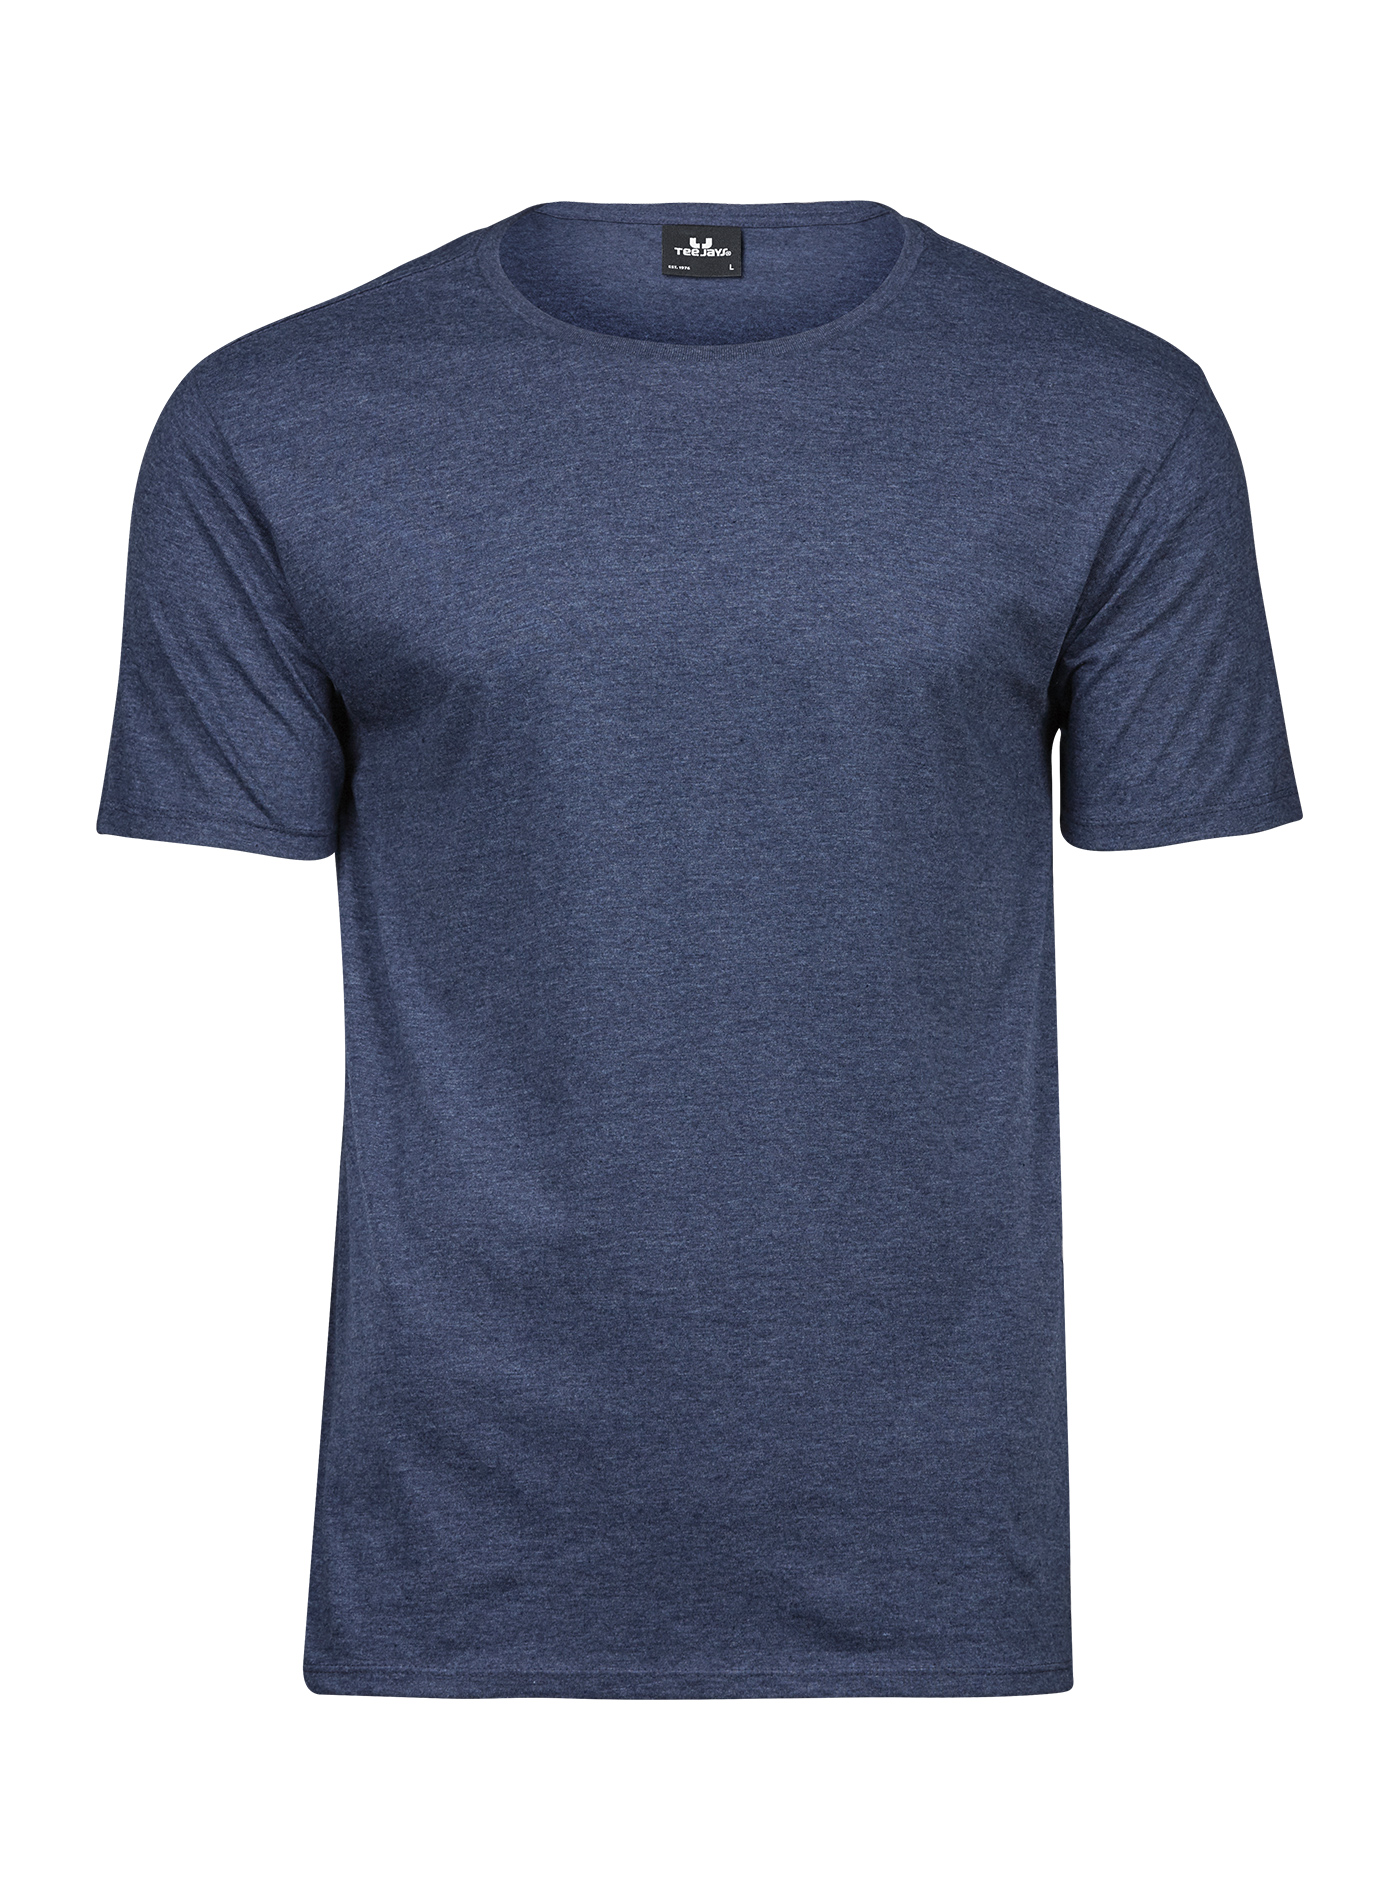 Pánské melírované tričko Tee Jays - Džínově modrá L